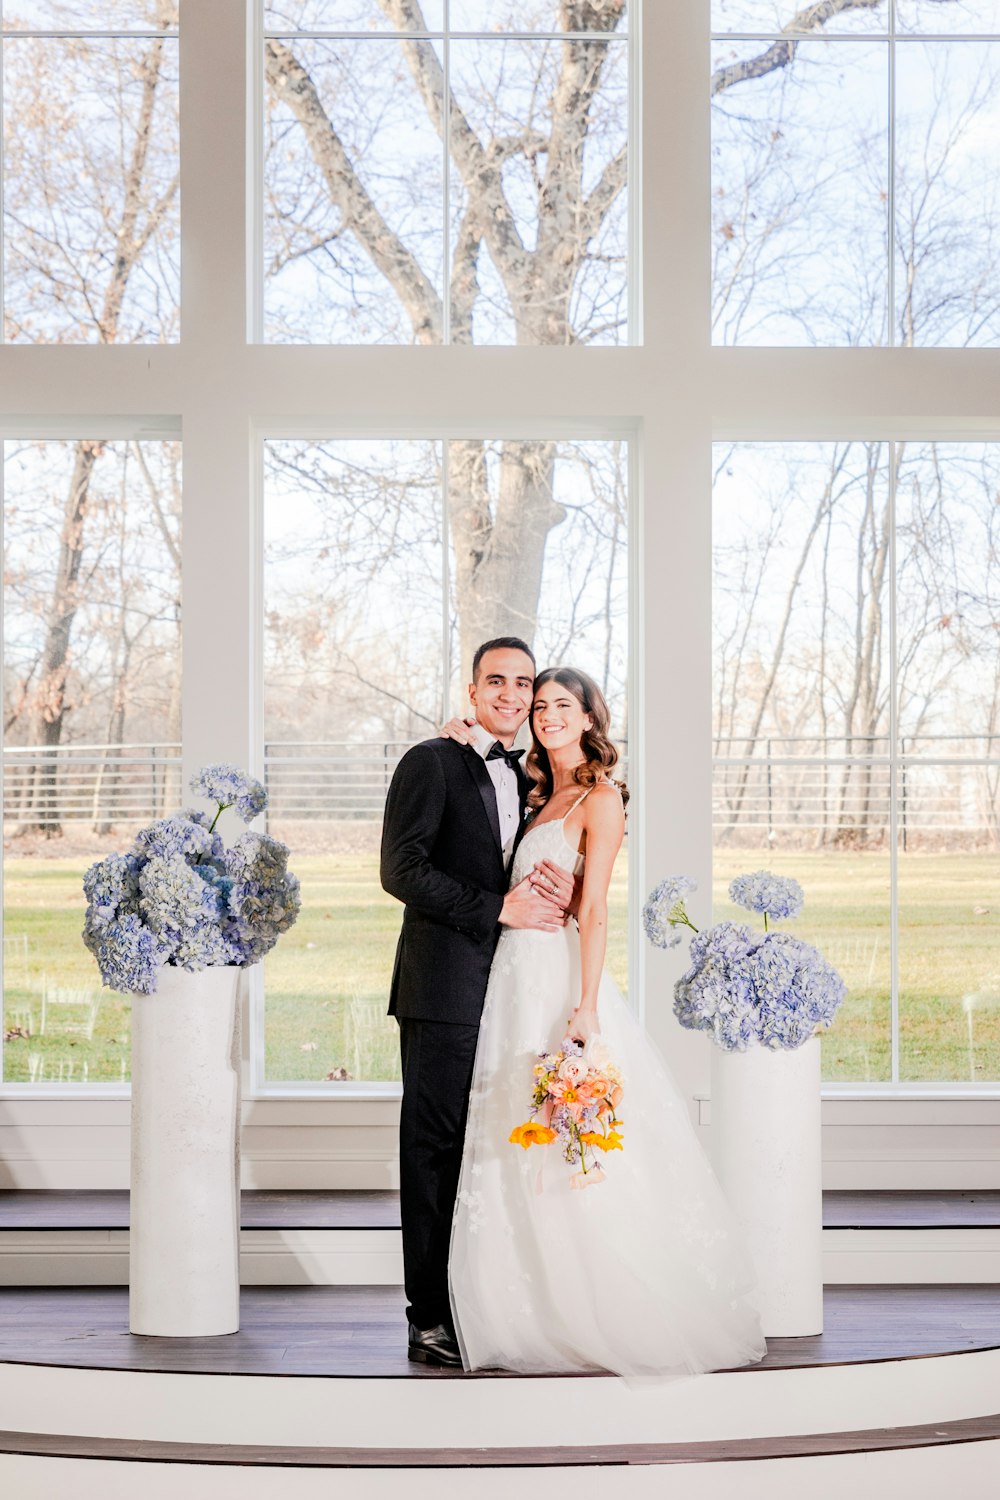 Braut und Bräutigam stehen vor einem großen Fenster